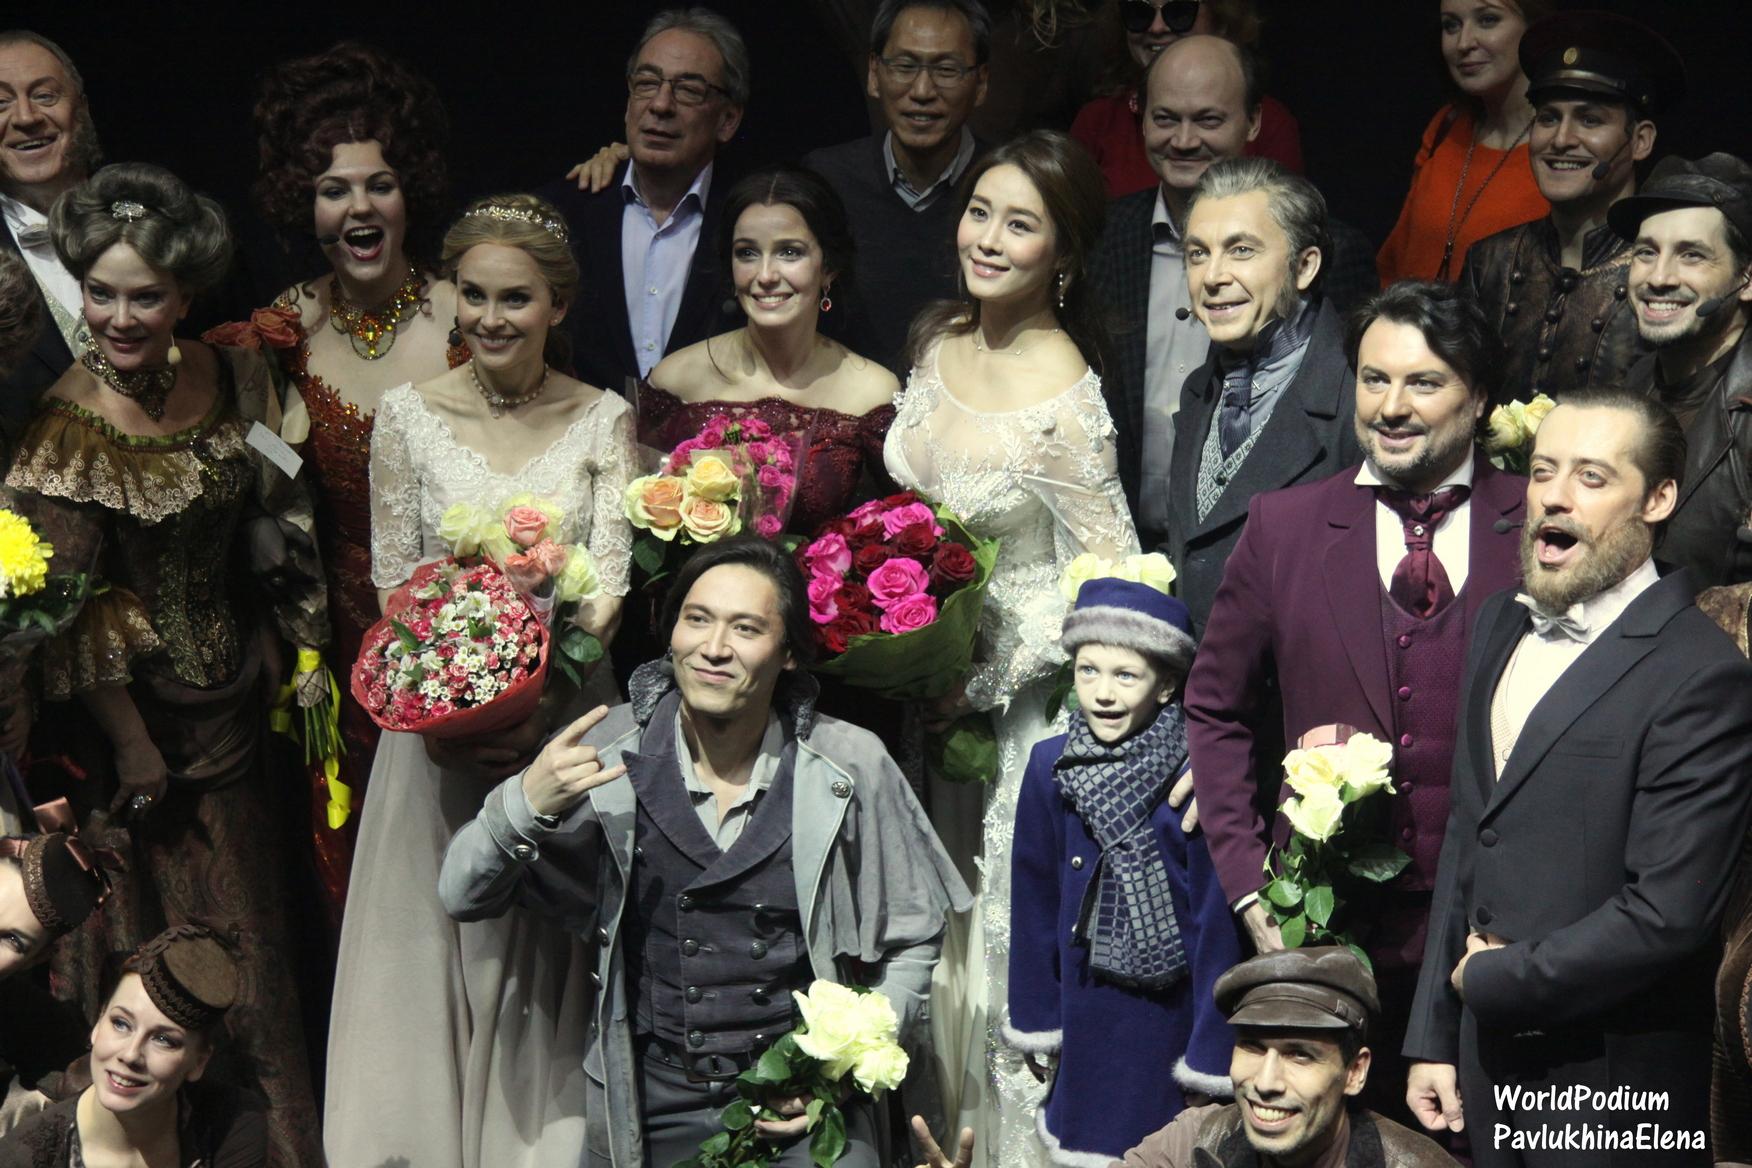  «Анна Каренина» покоряет Мир – впервые Российский мюзикл будет поставлен по лицензии за границей!